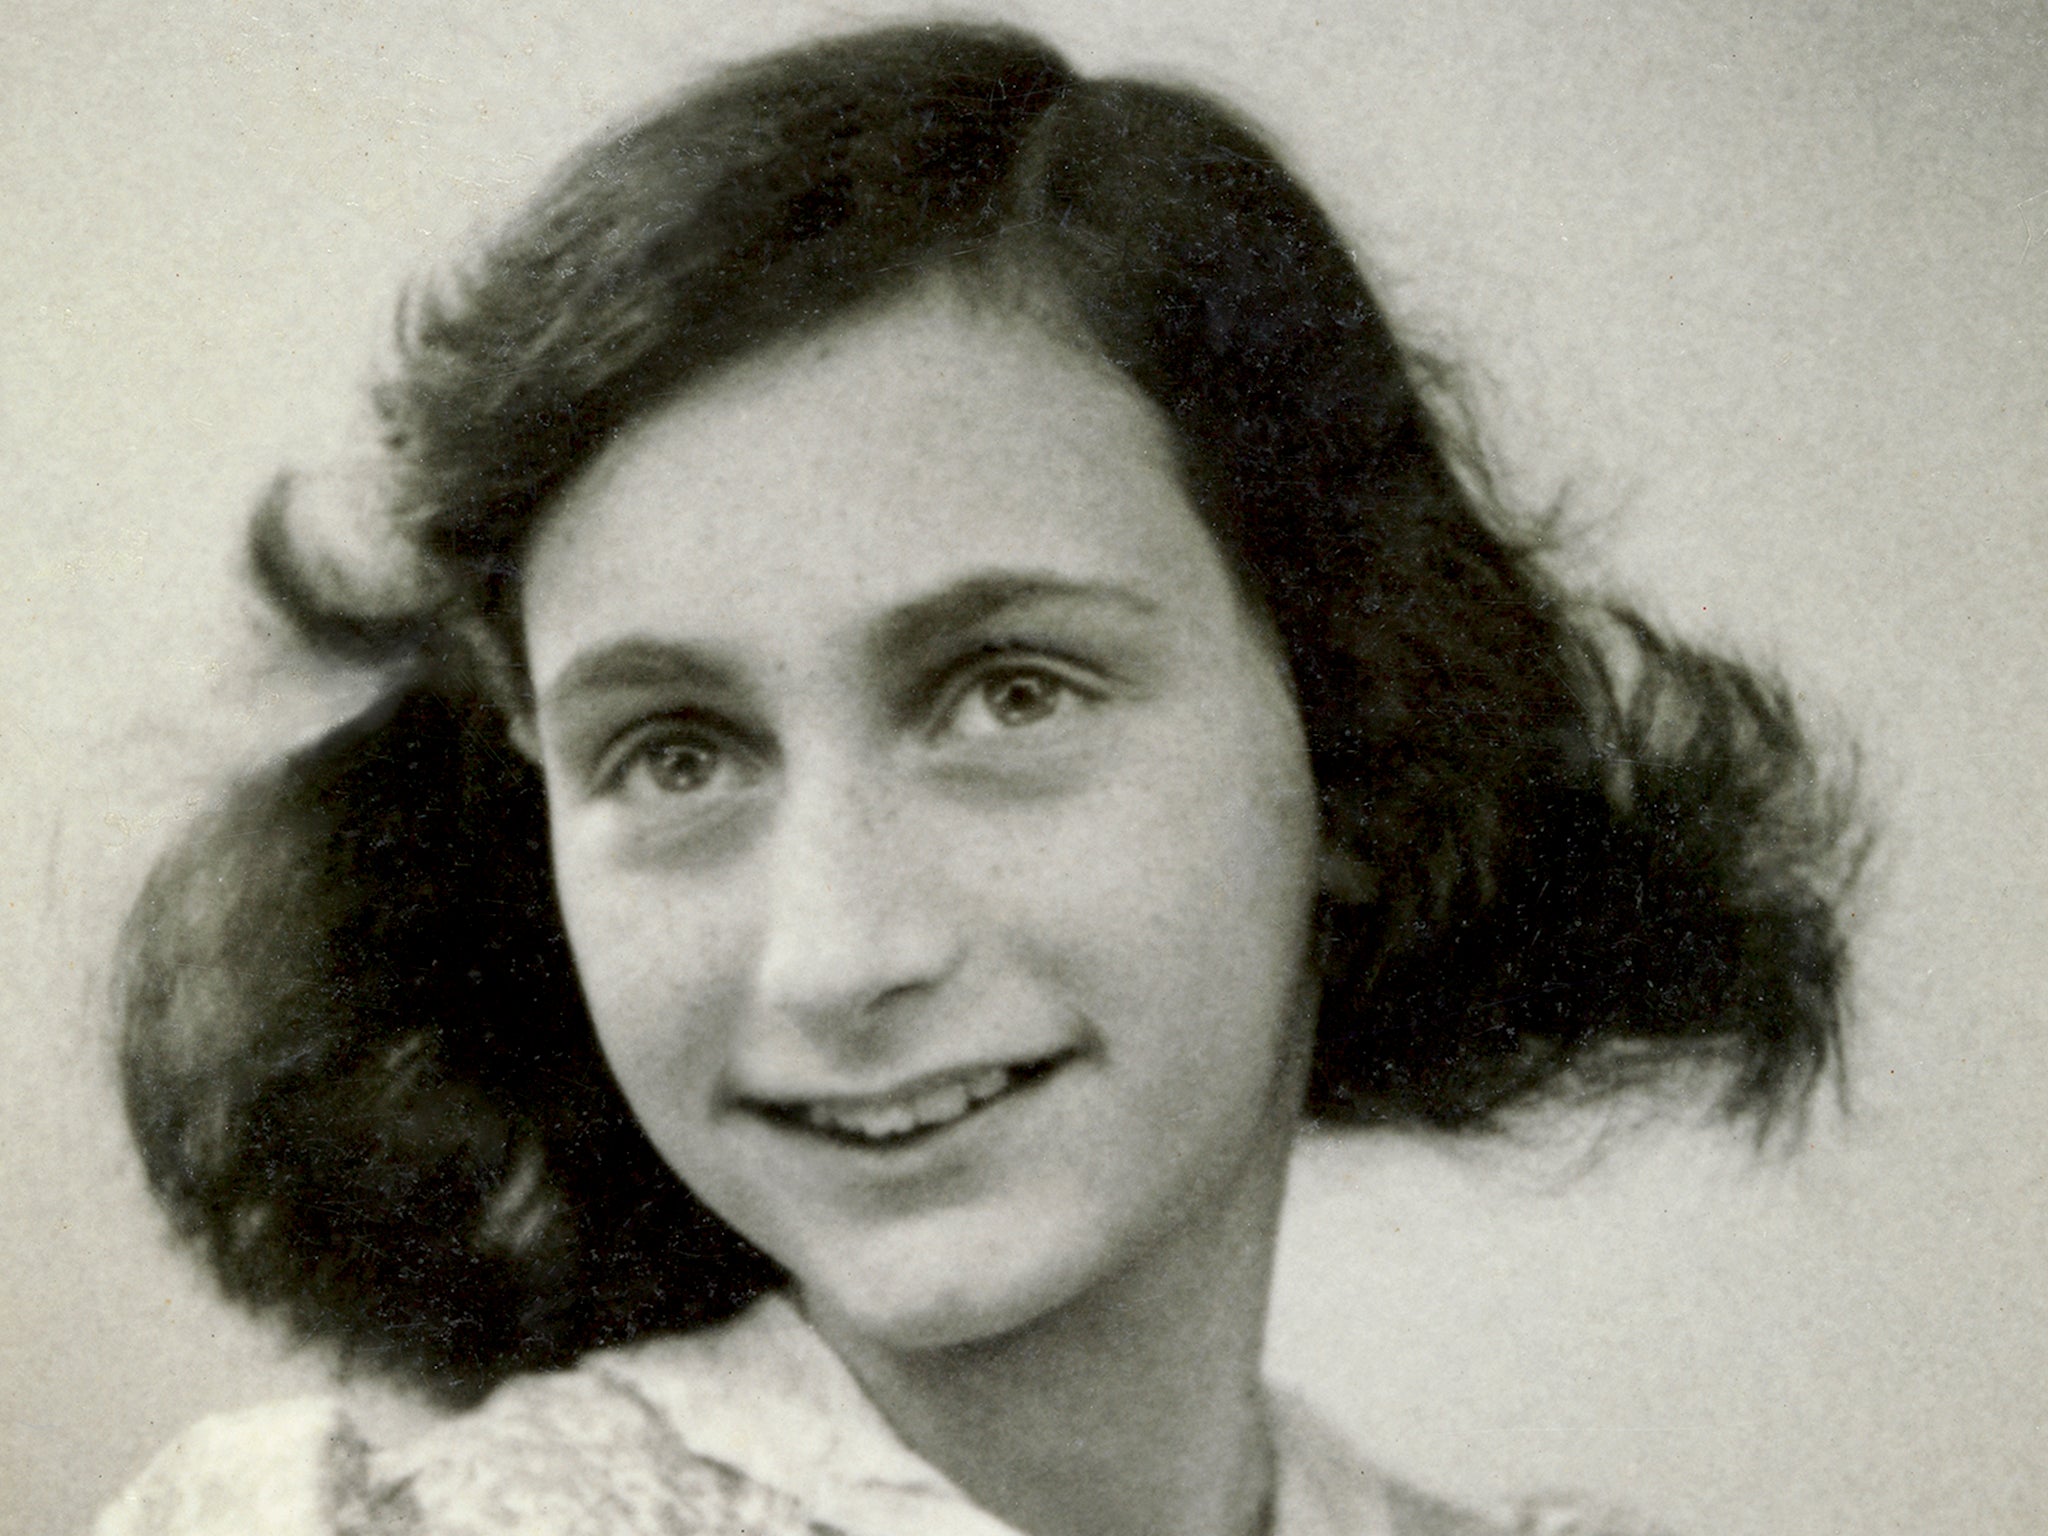 David Berkowitz afirma que se inspira en el diario de Ana Frank cuando se escondió de los nazis